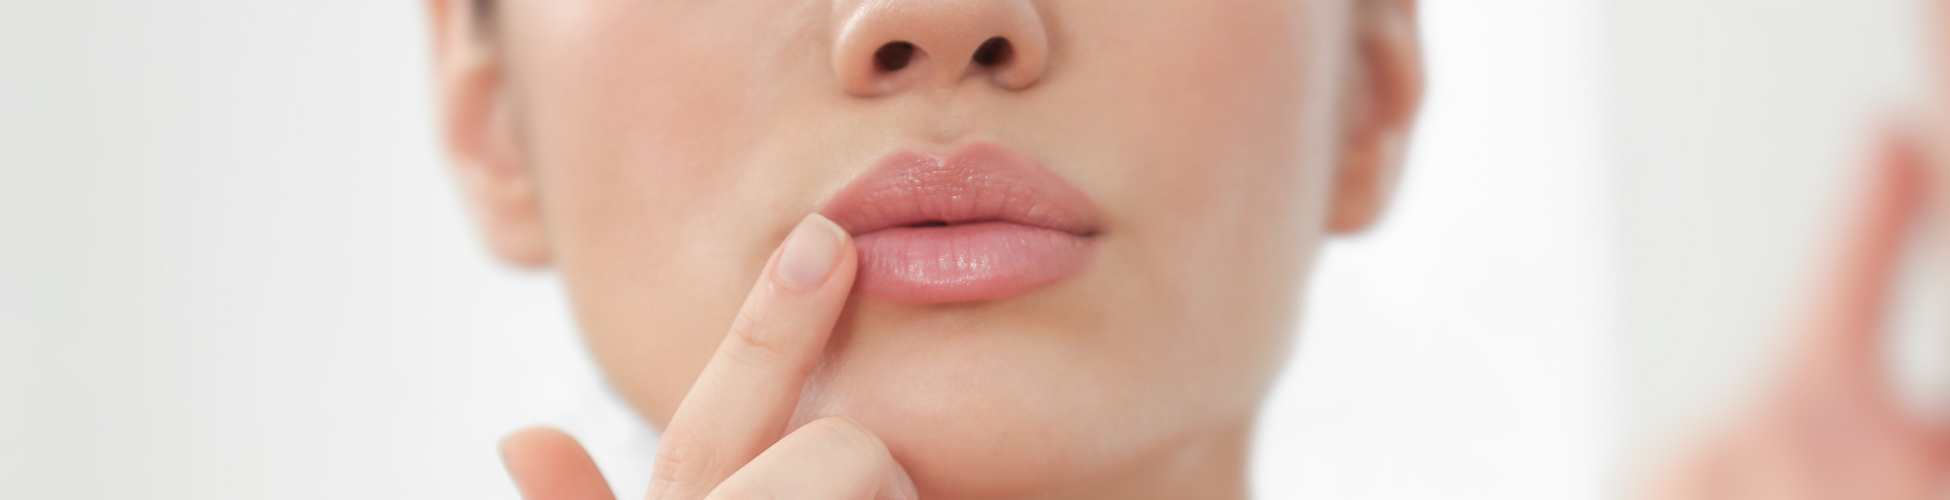 Mejor clínica en aumento de labios en Madrid